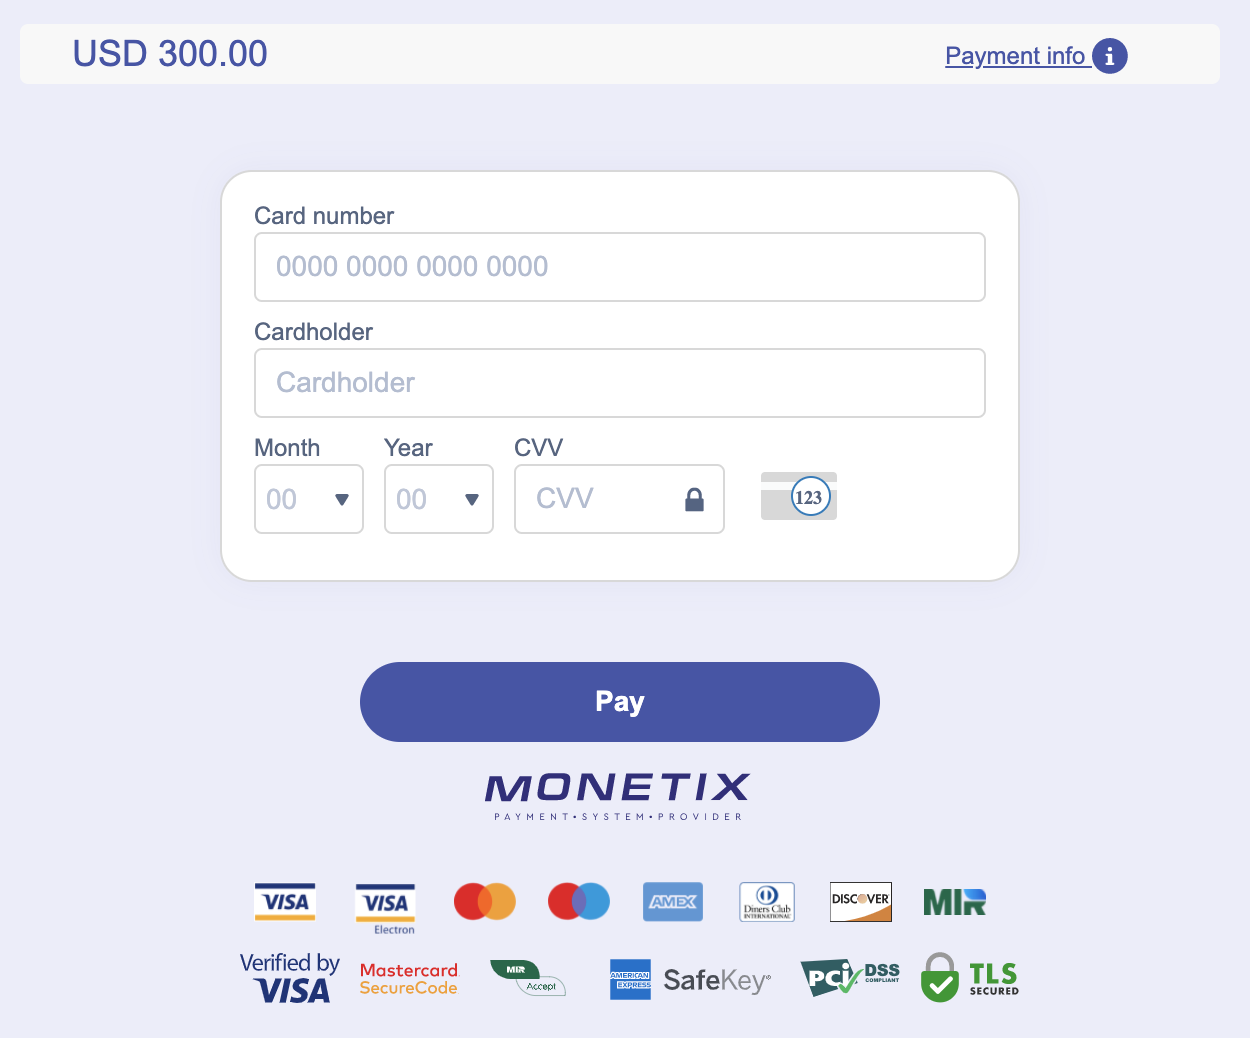 Vkládejte peníze do Quotex prostřednictvím vietnamských bankovních karet (Visa / MasterCard), banky (Bank of Vietnam, QR bankovnictví), elektronických plateb (Perfect Money, MoMo Wallet) a kryptoměn